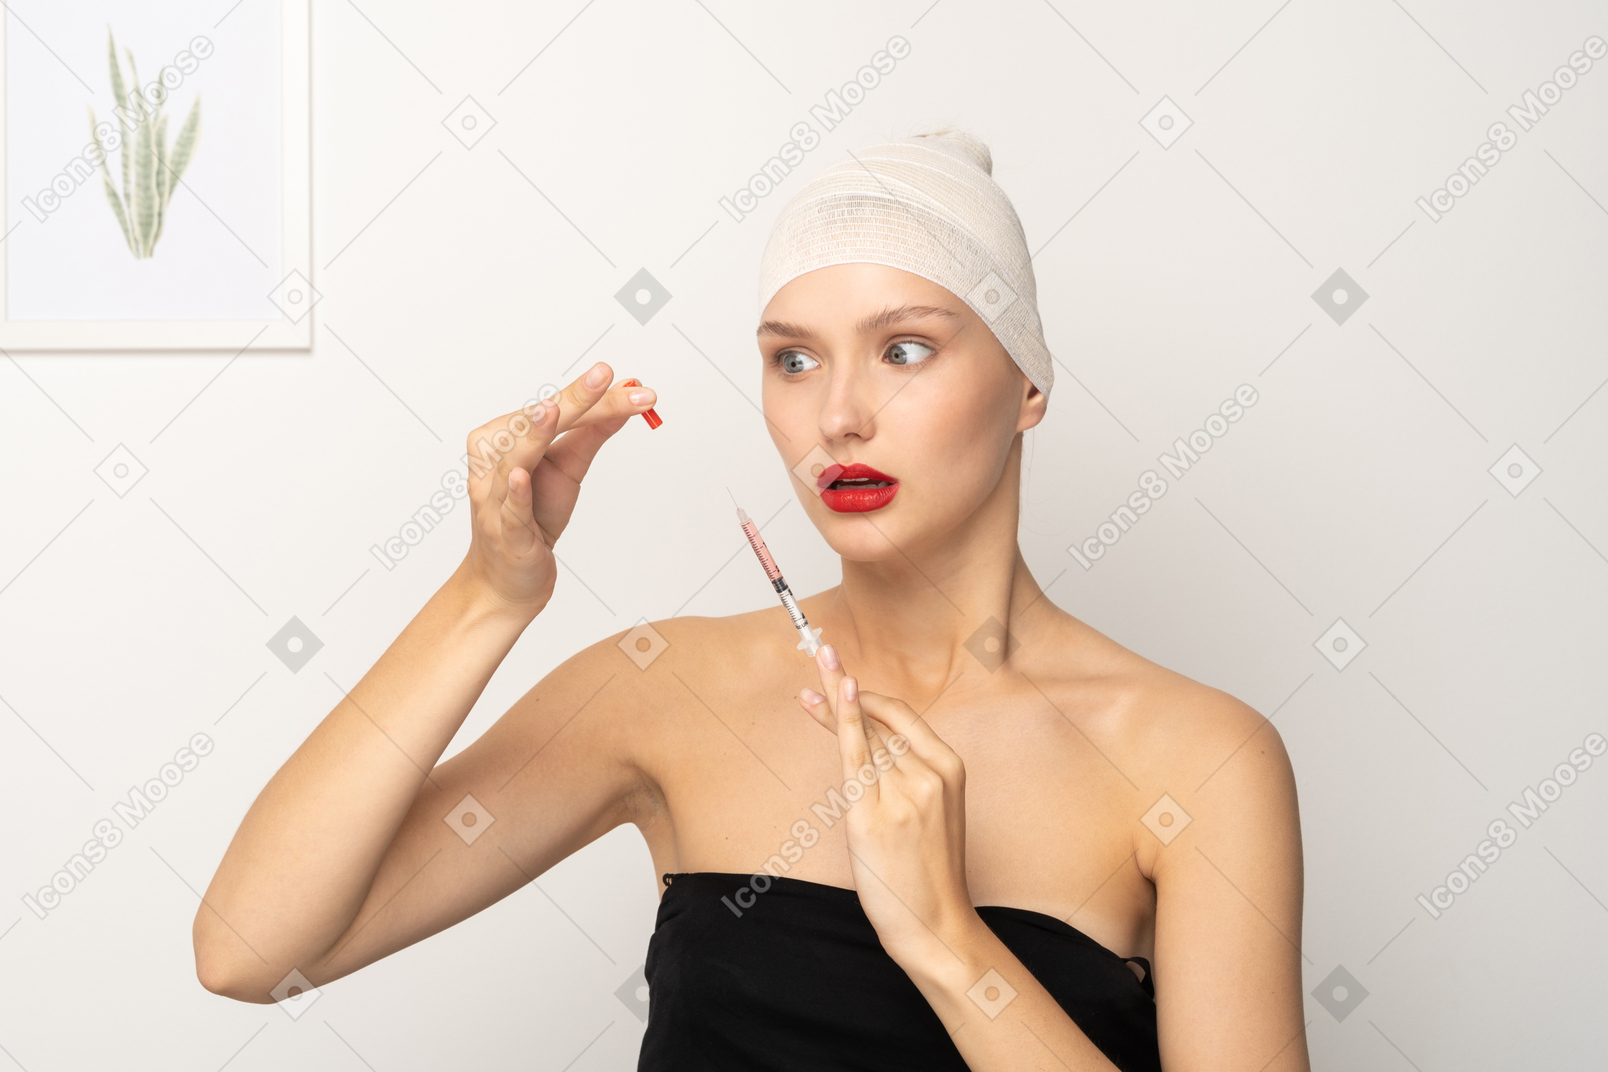 Mujer joven quitando la tapa de la jeringa y mirando asustada